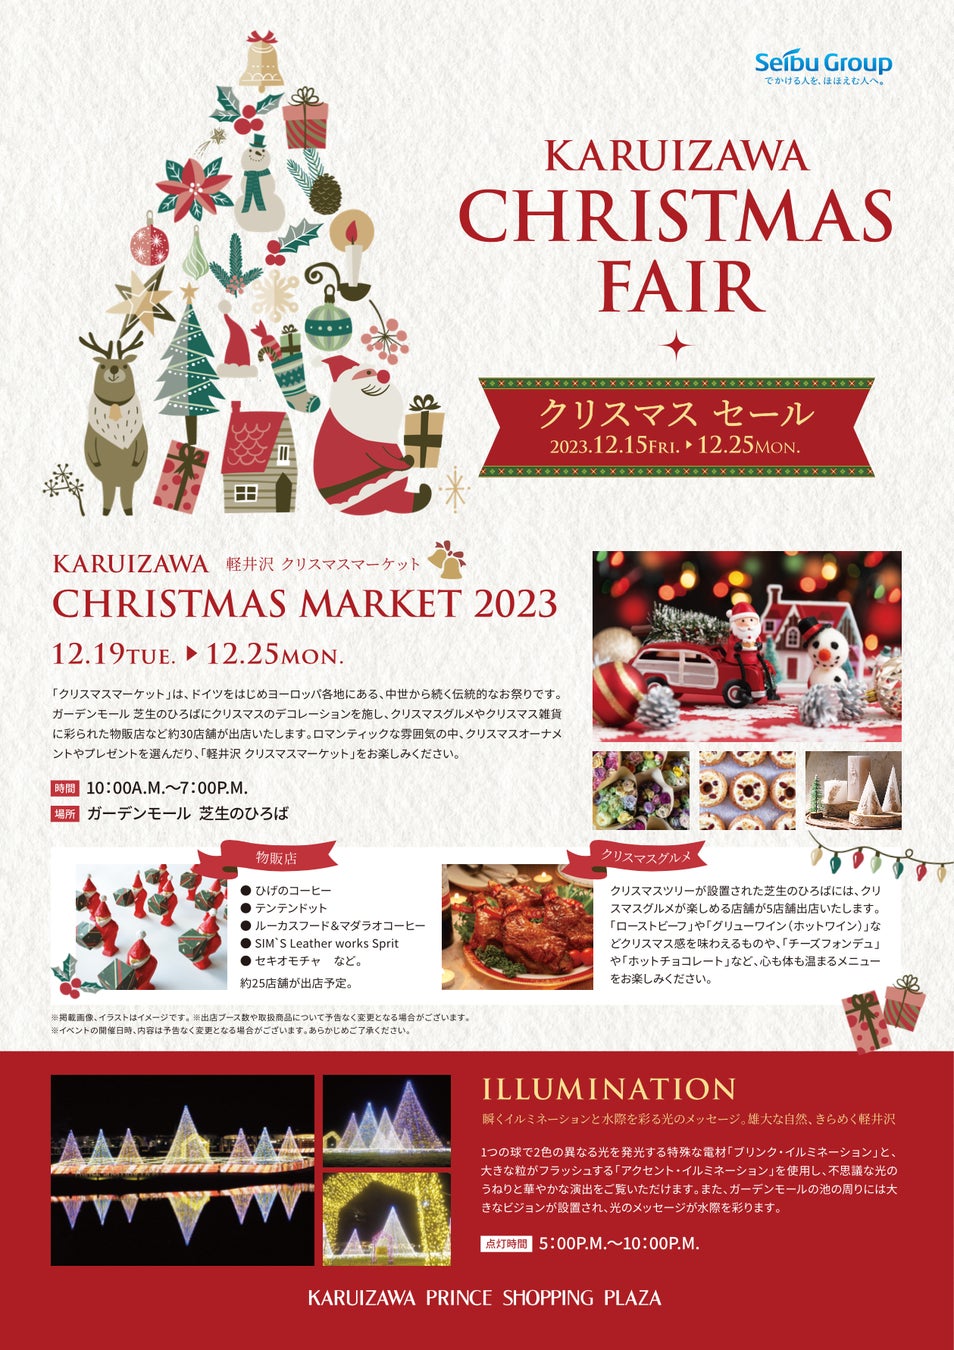 注目の軽井沢クリスマスマーケット！限定グルメや雑貨ブース約30店舗公開